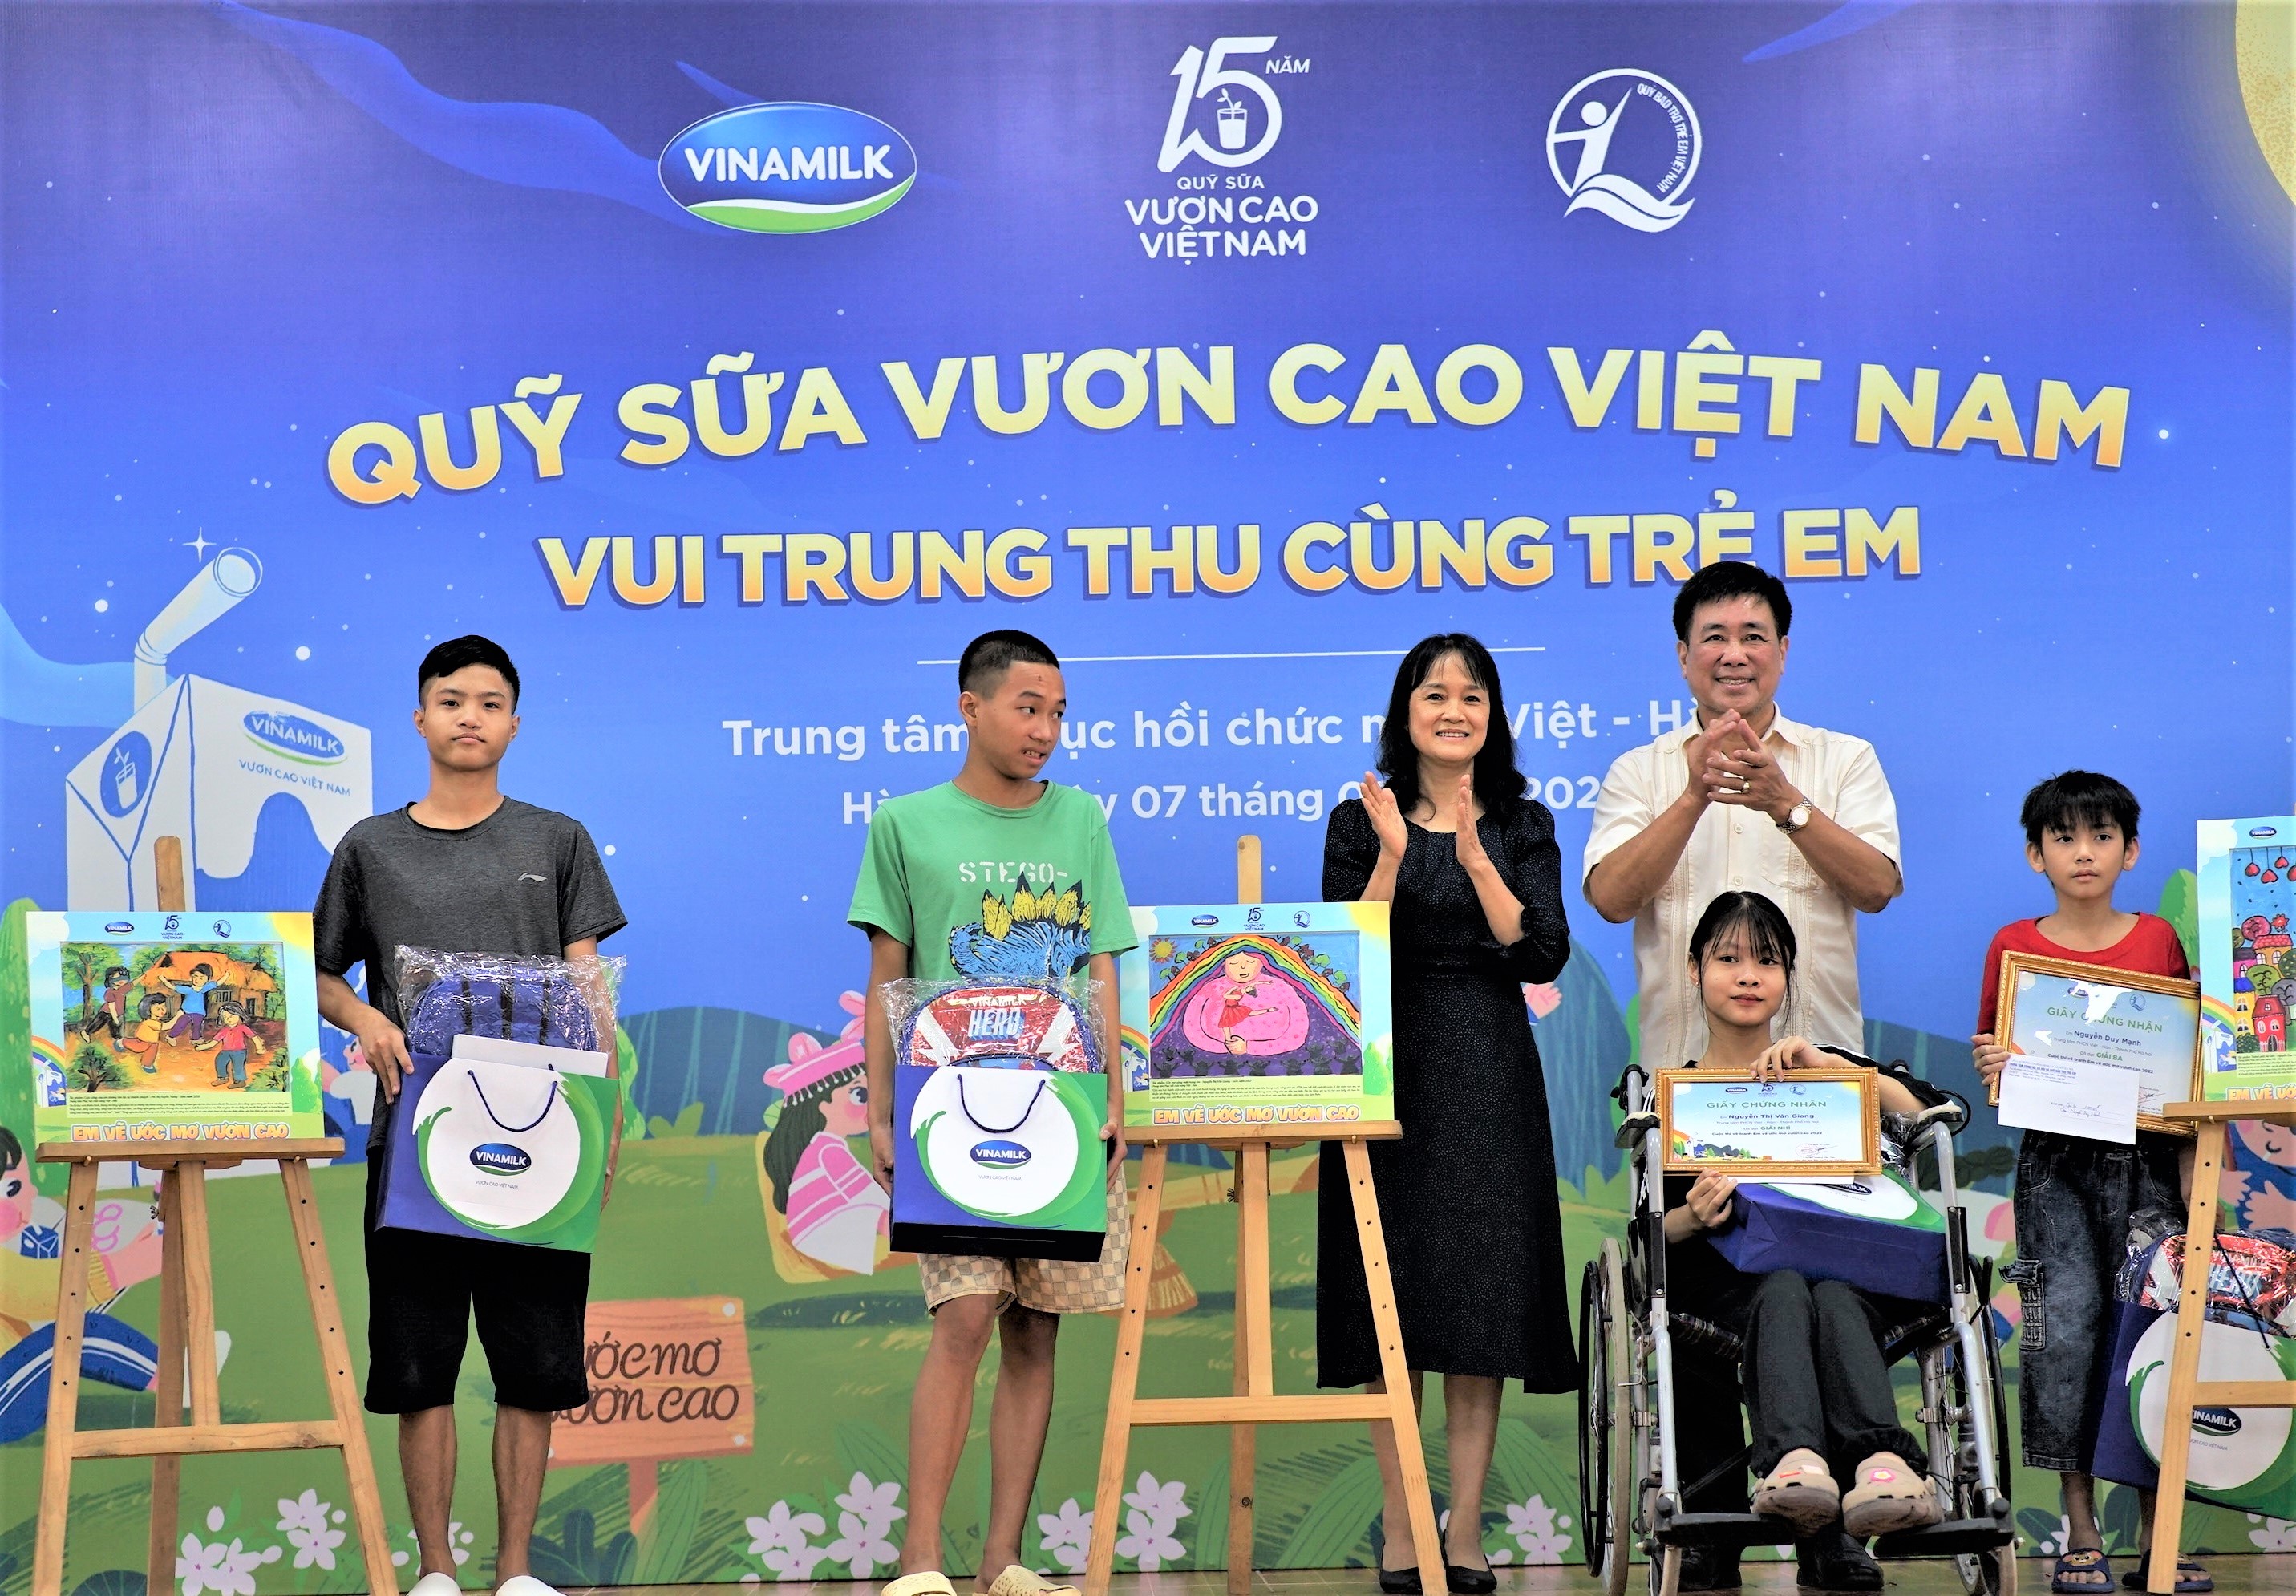 Vinamilk cùng với Quỹ sữa sẽ mang đến một mùa Trung thu thật ý nghĩa cho các em nhỏ. Cùng xem hình ảnh về hoạt động của Quỹ sữa và Vinamilk trong mùa Trung thu để hiểu thêm về sự quan tâm và yêu thương của họ đối với trẻ em Việt Nam.